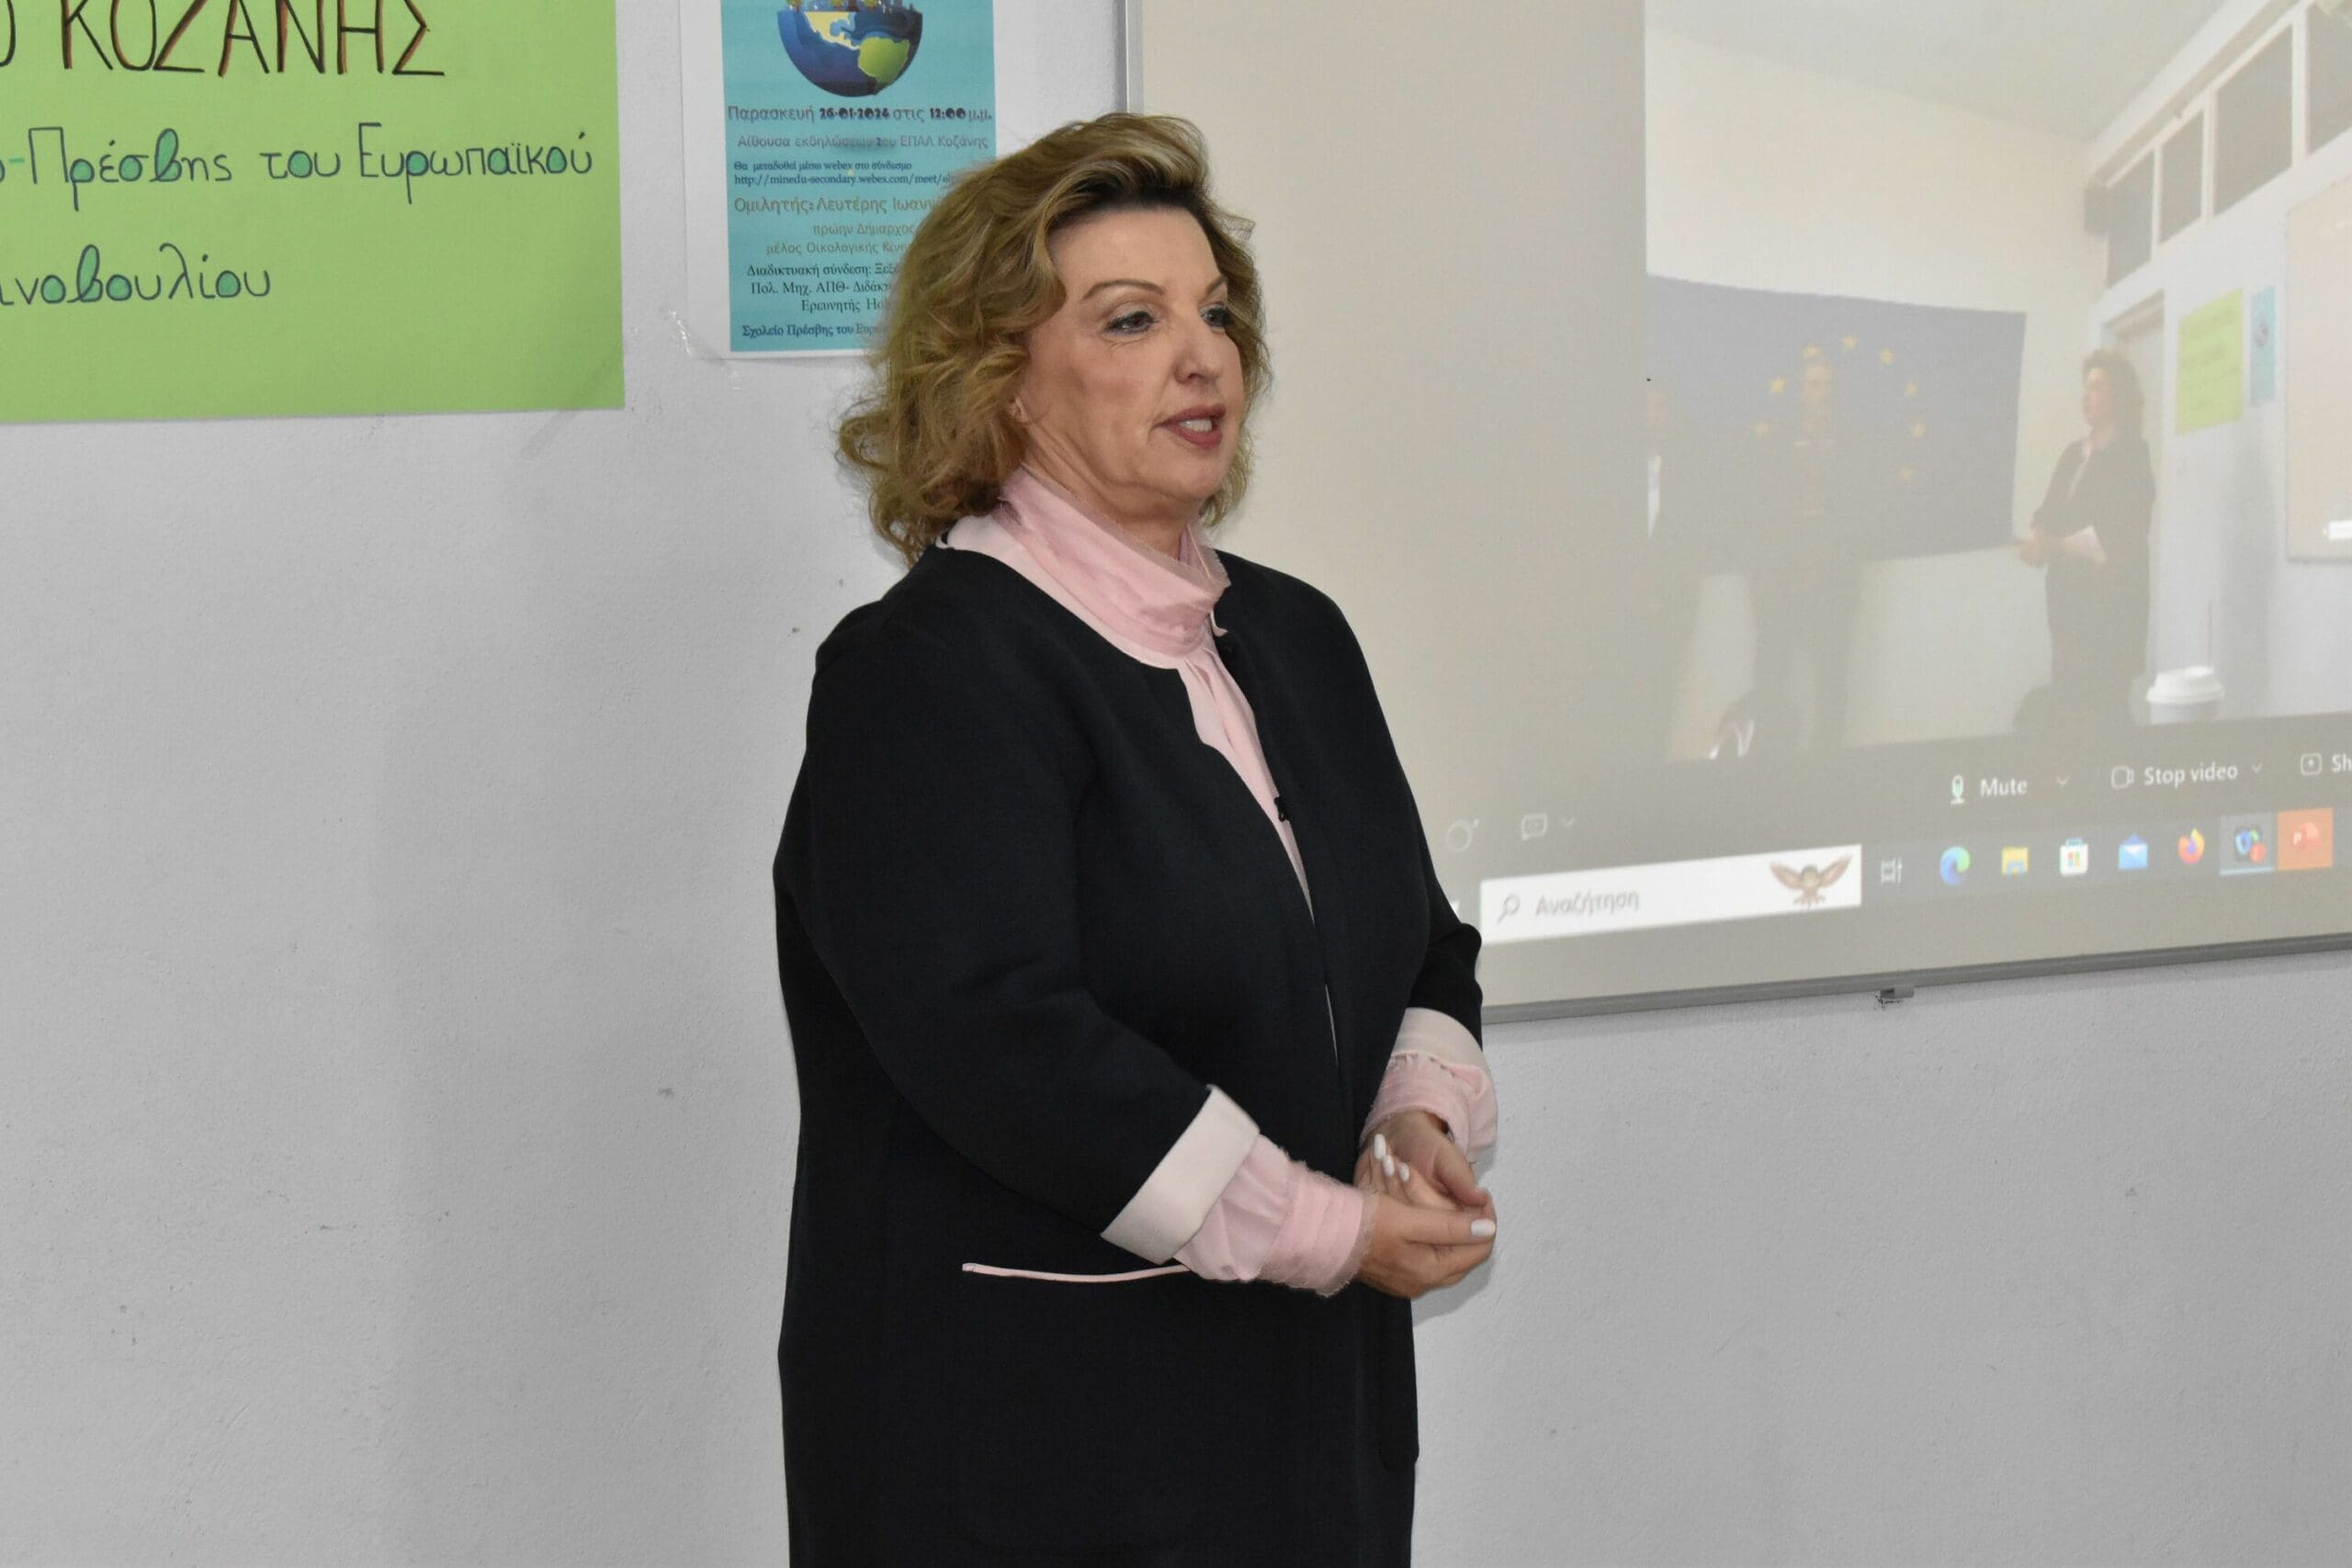 Σε εκδήλωση του 2ου ΕΠΑΛ για τη Δίκαιη Μετάβαση, ο Δήμαρχος Κοζάνης Γιάννης Κοκκαλιάρης (Φωτογραφίες)